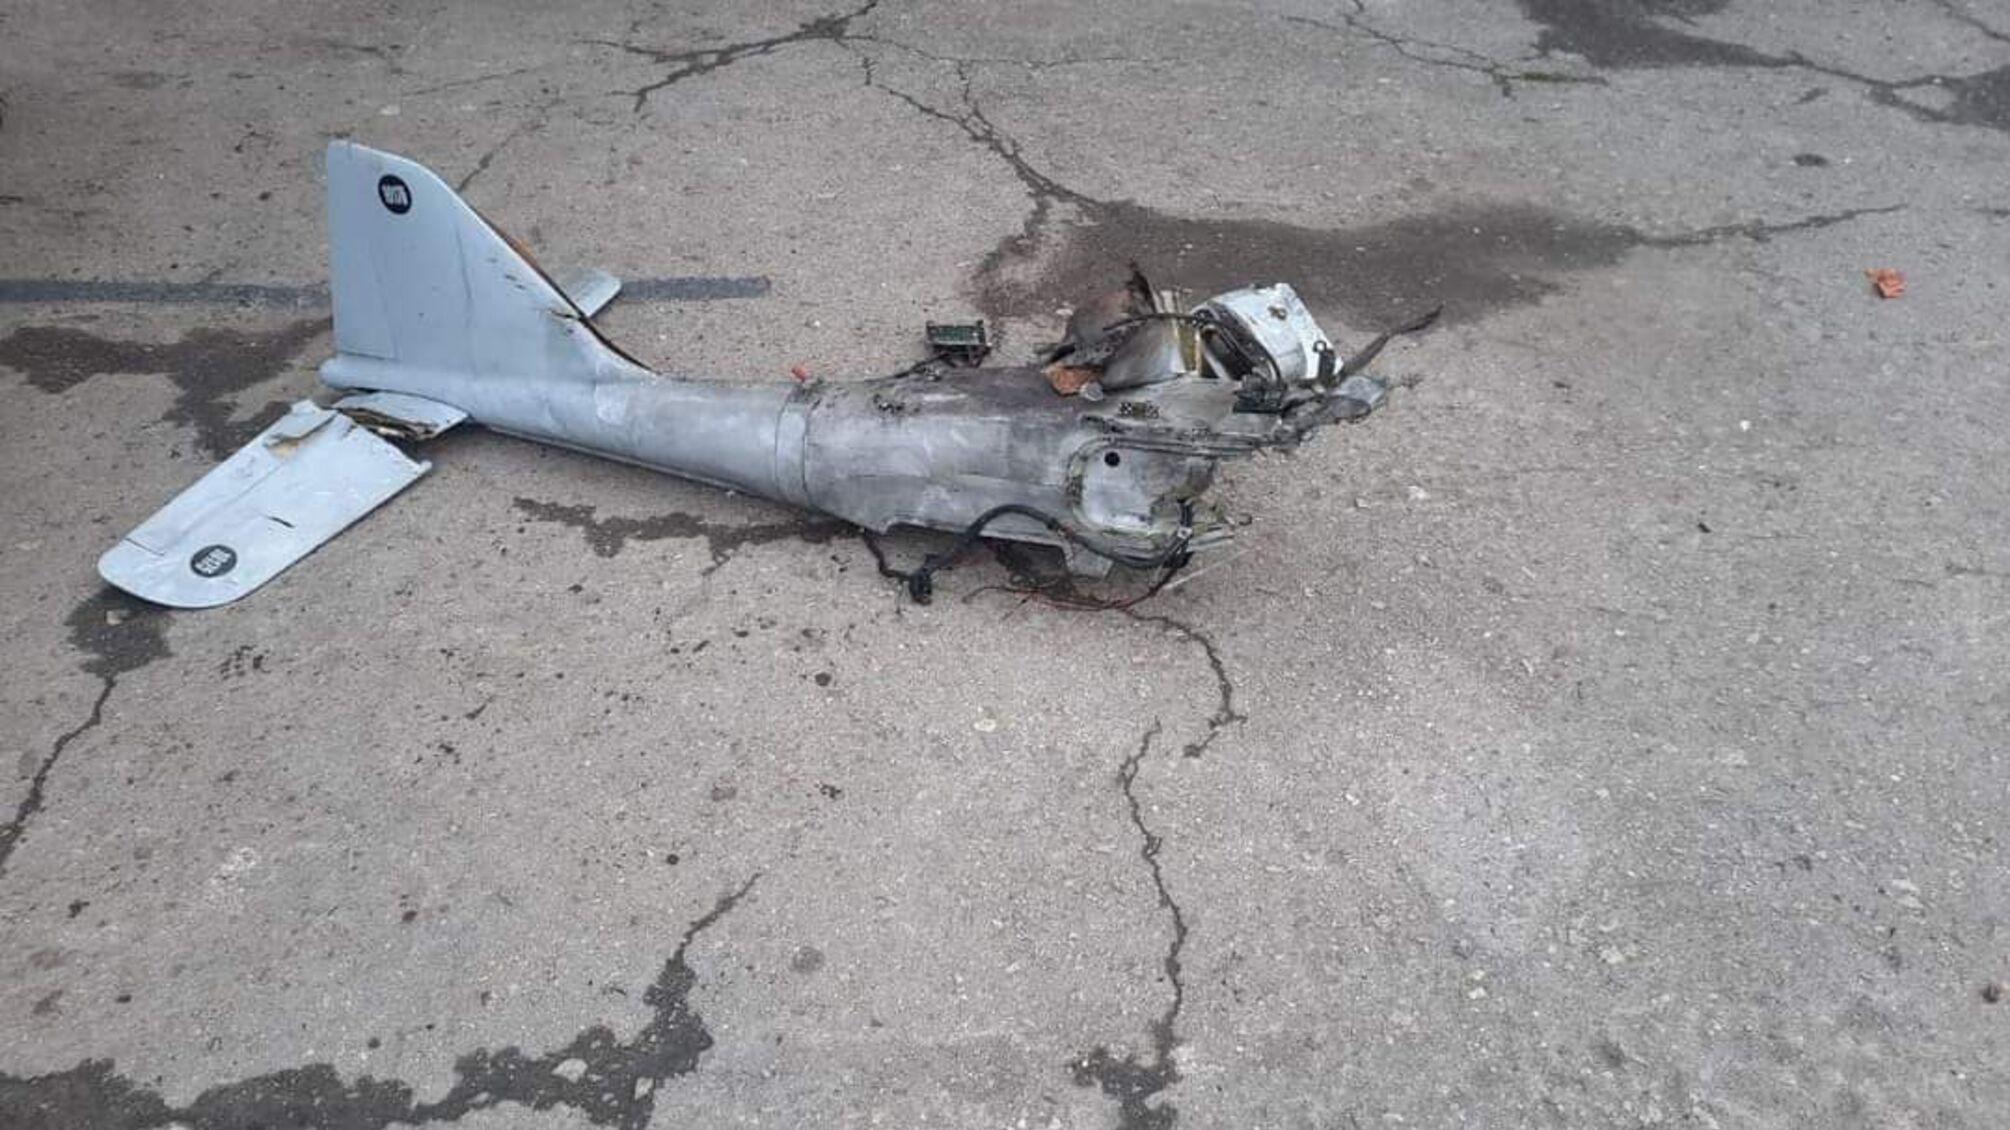 В Сумской области ВСУ 'минунули' из стрелкового оружия очередной вражеский беспилотник стоимостью $100 тыс.